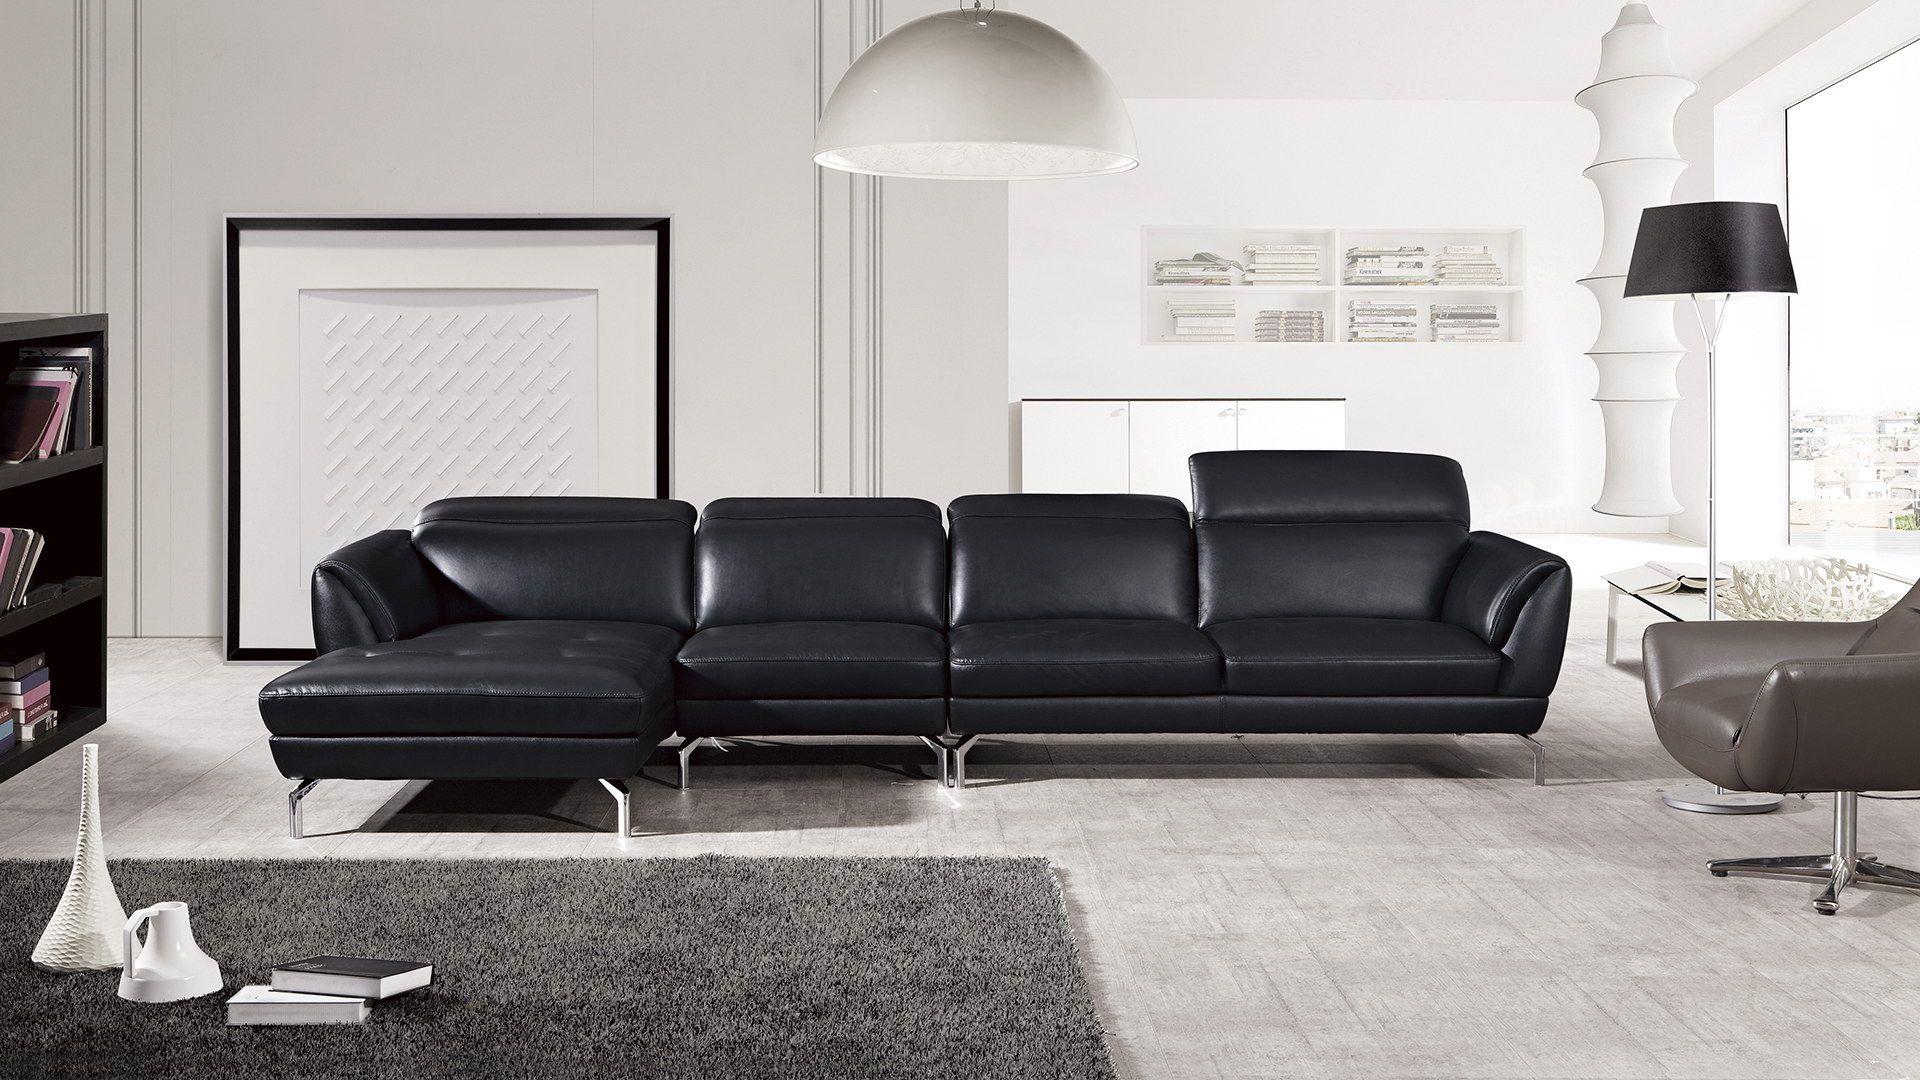 Contemporary, Modern Sectional Sofa EK-L023-BK EK-L023R-BK in Black Italian Leather